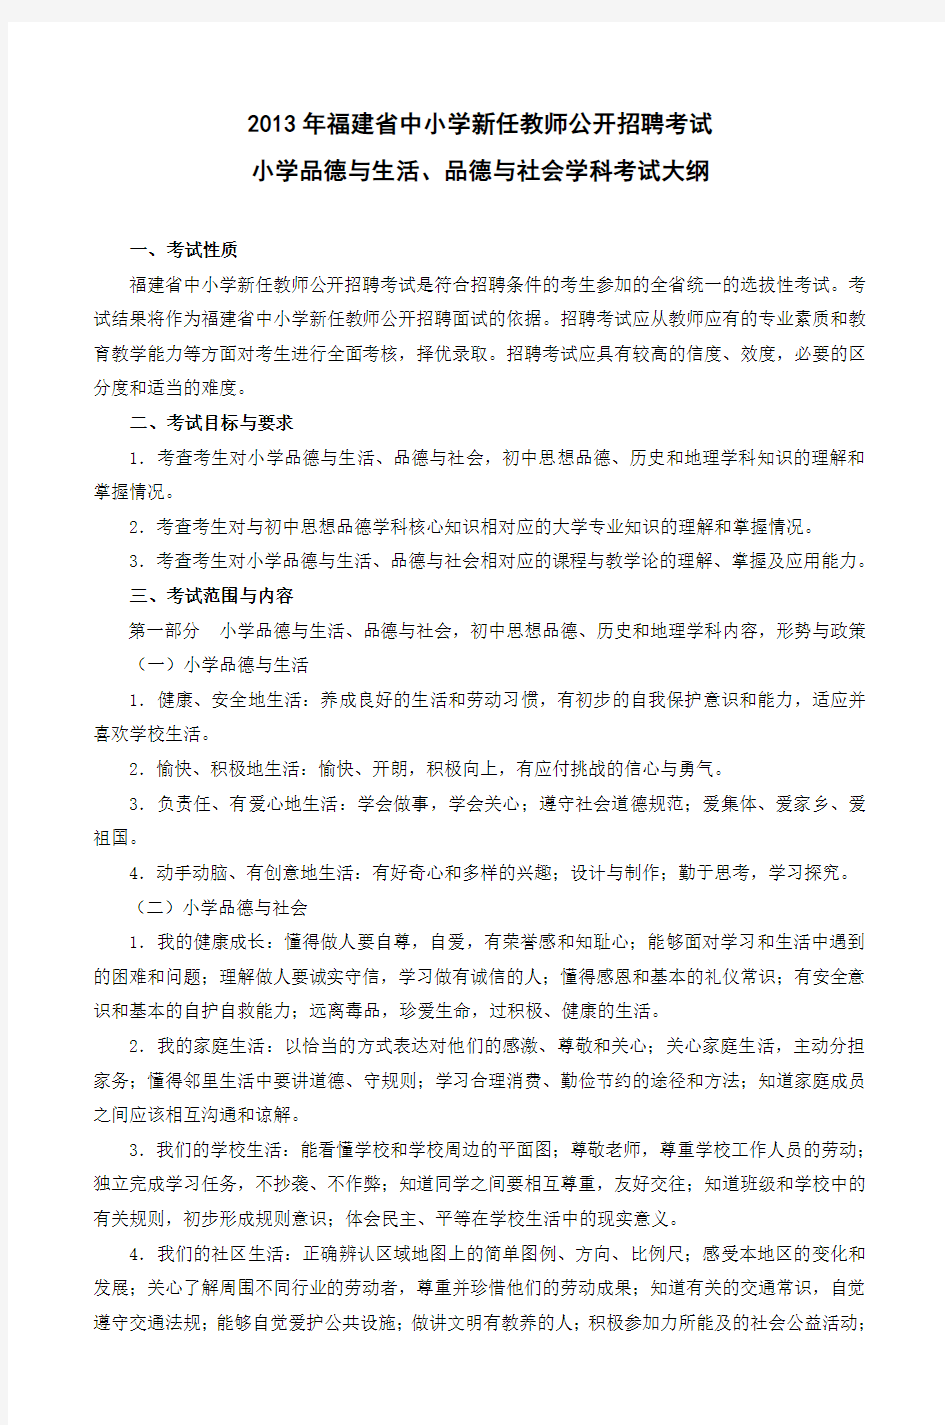 2013年福建省中小学新任教师公开招聘考试